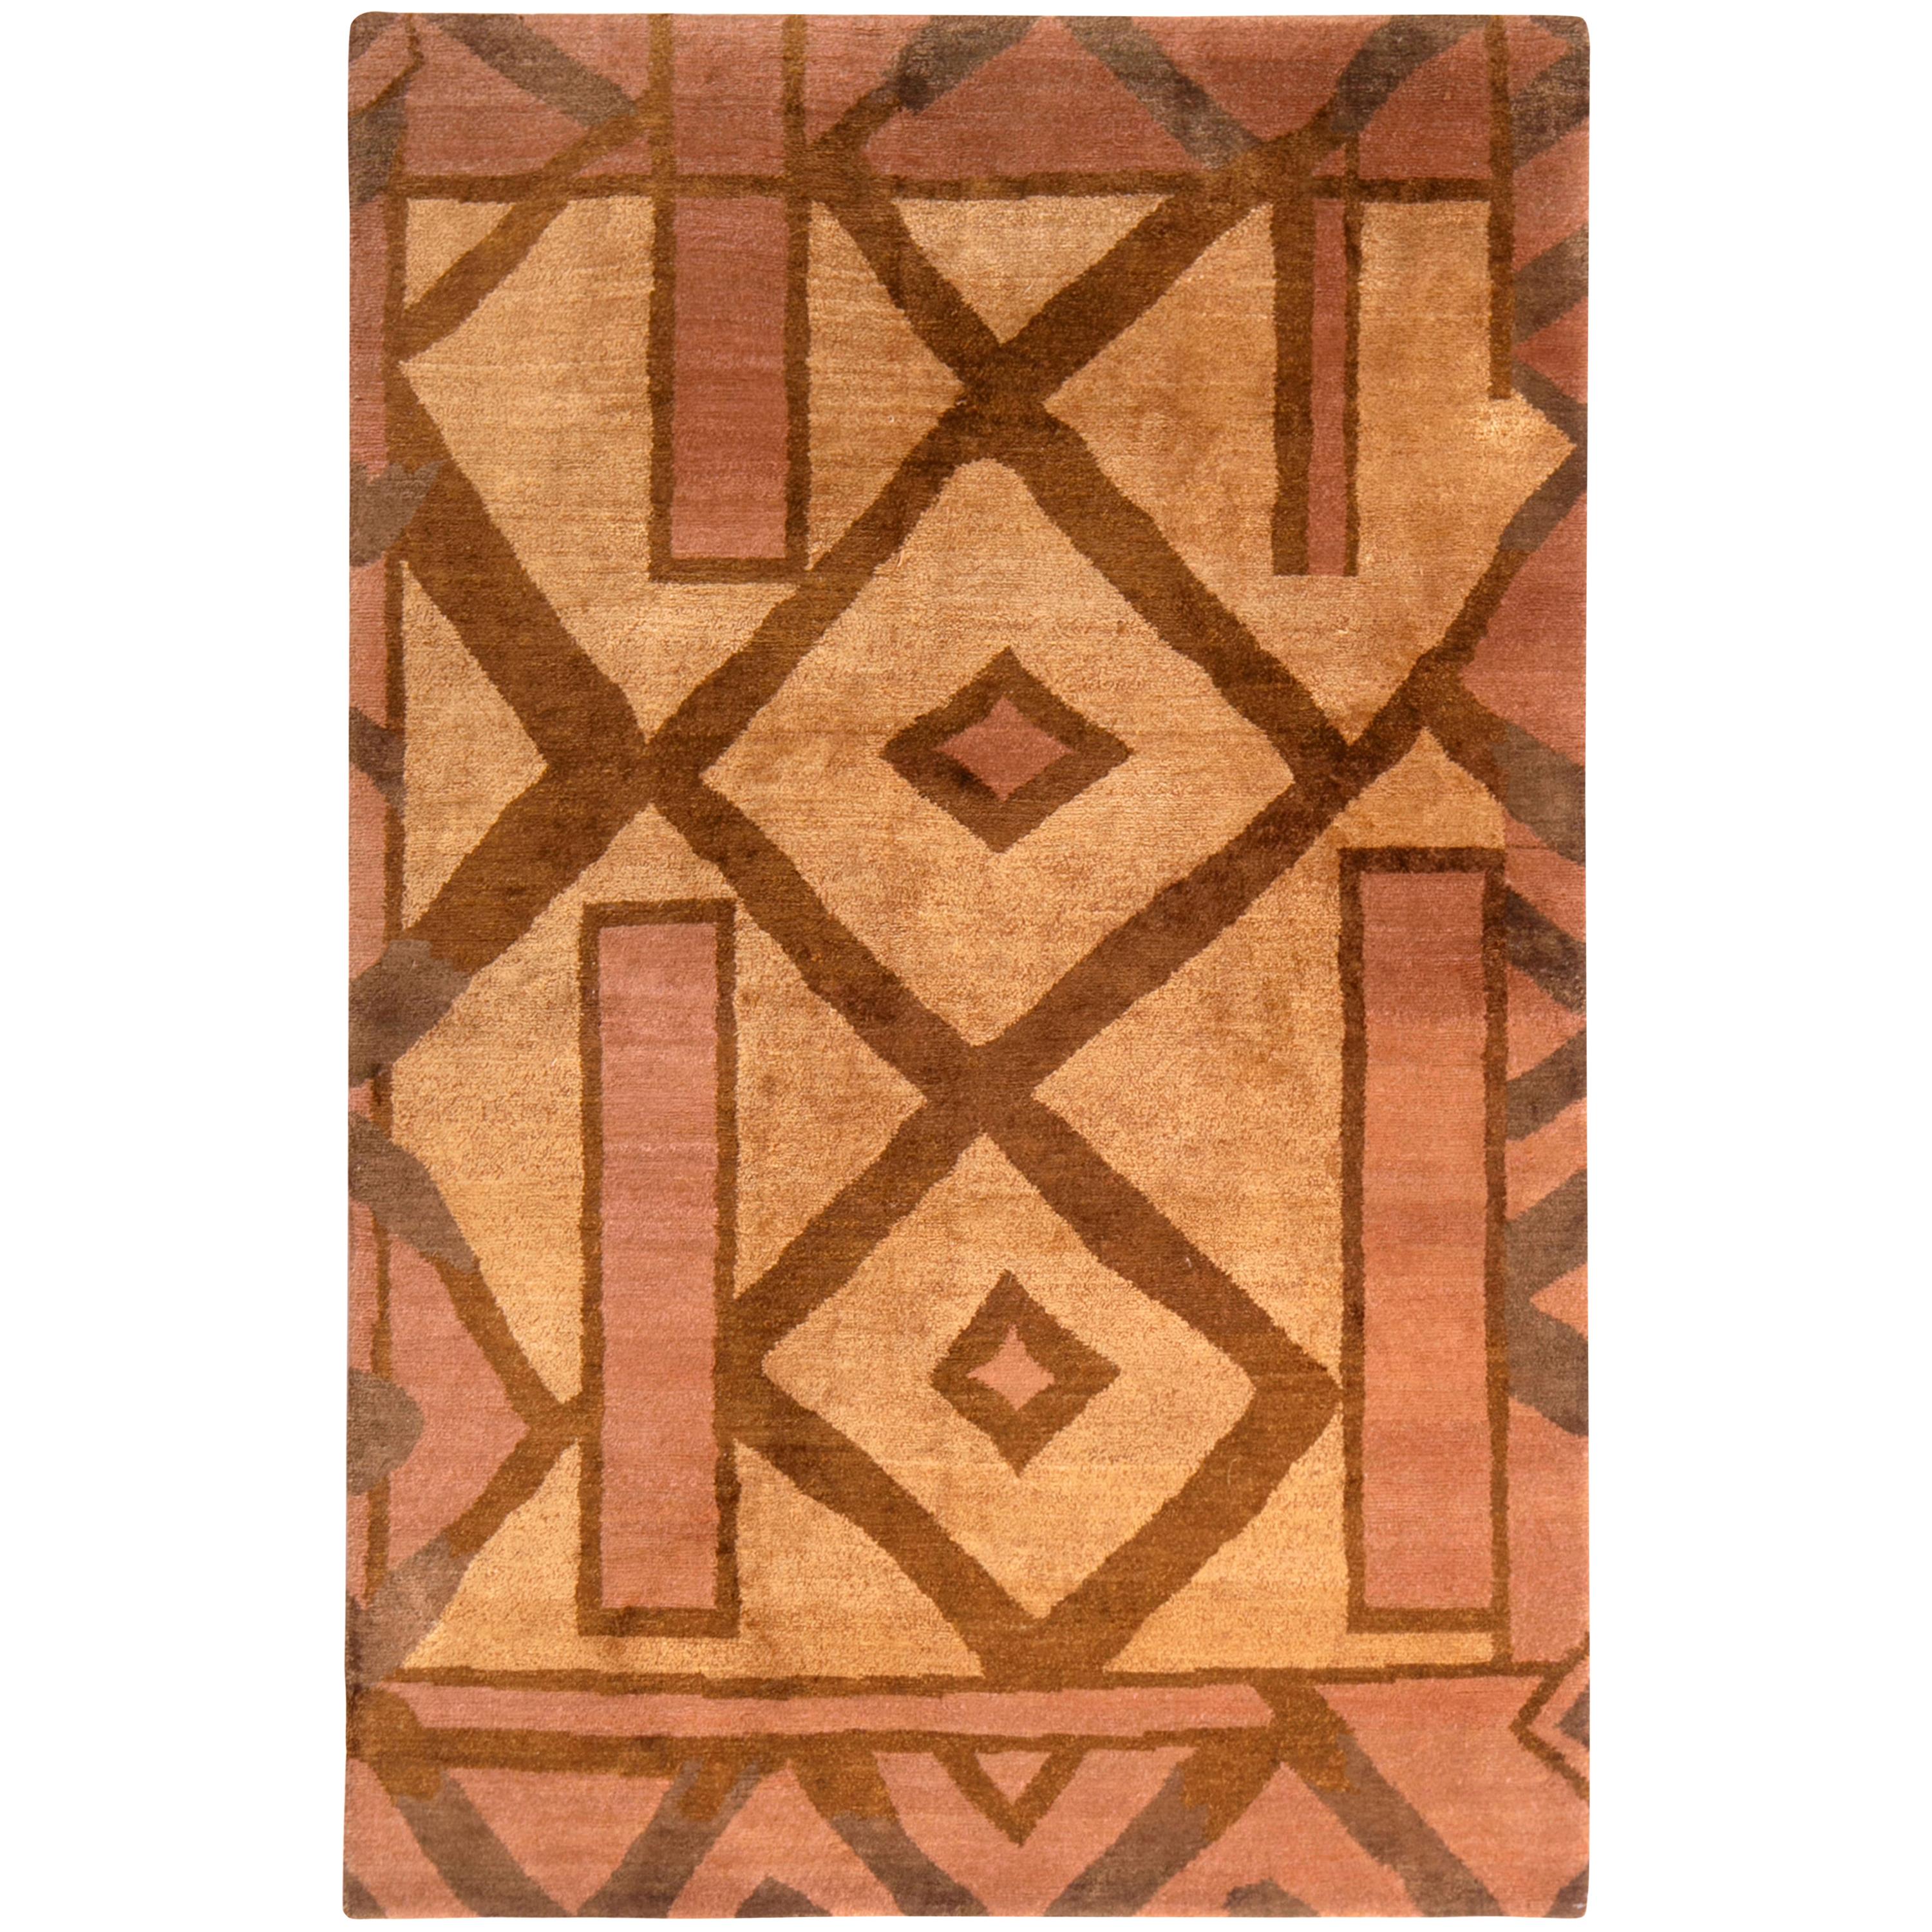 Tapis et tapis de style cubiste de Kilim en laine et soie beige-marron et rose